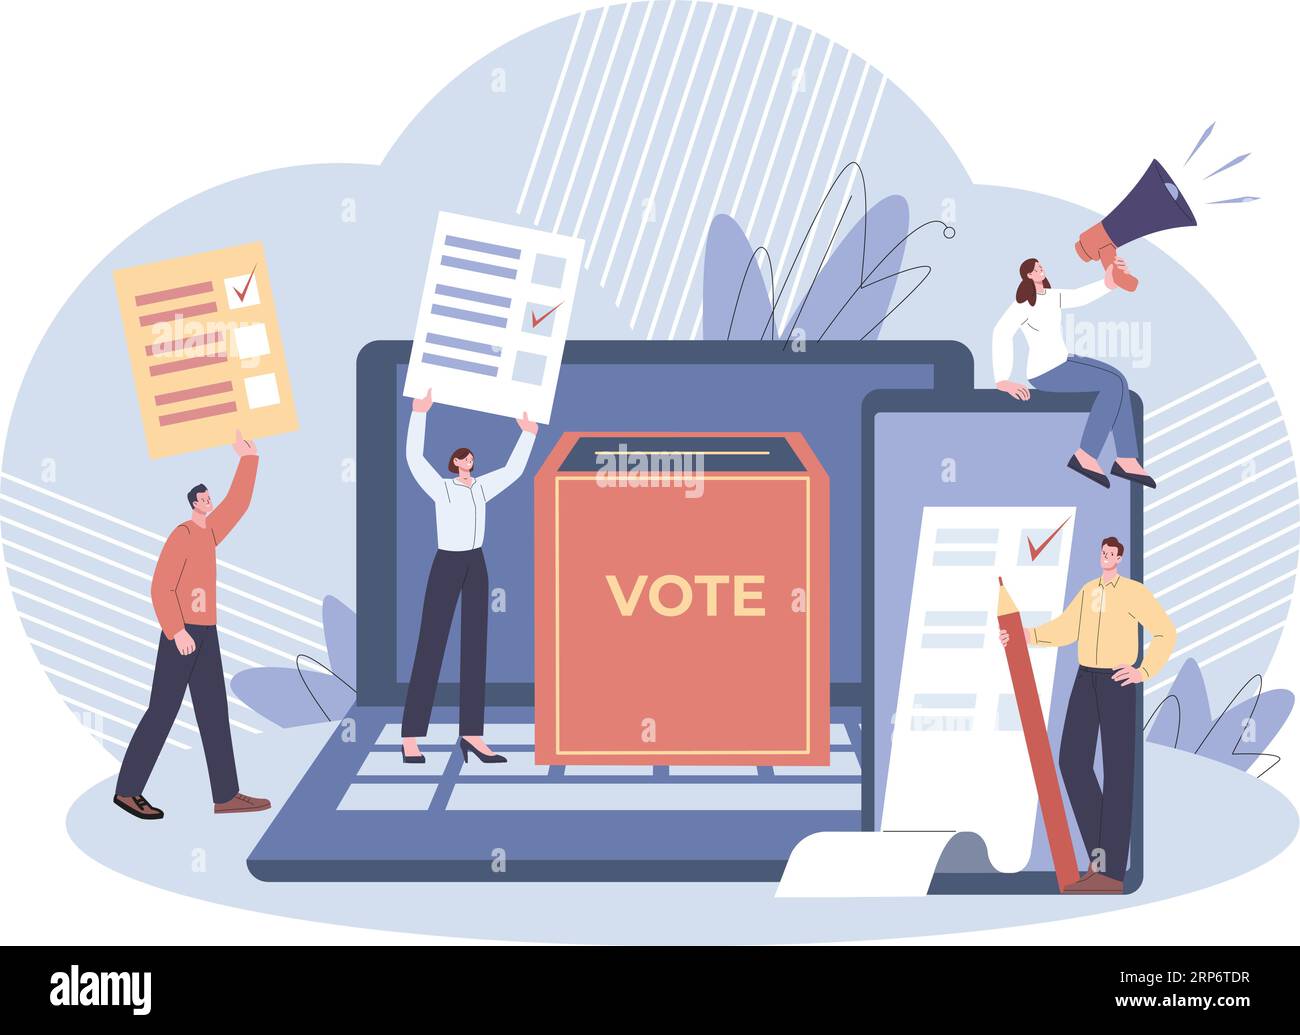 Votazioni online, sondaggi nei media o su Internet. Le persone votano il governo, le schede digitali. Elezioni politiche elettroniche, dichiarazioni o feedback kicky Vector Illustrazione Vettoriale